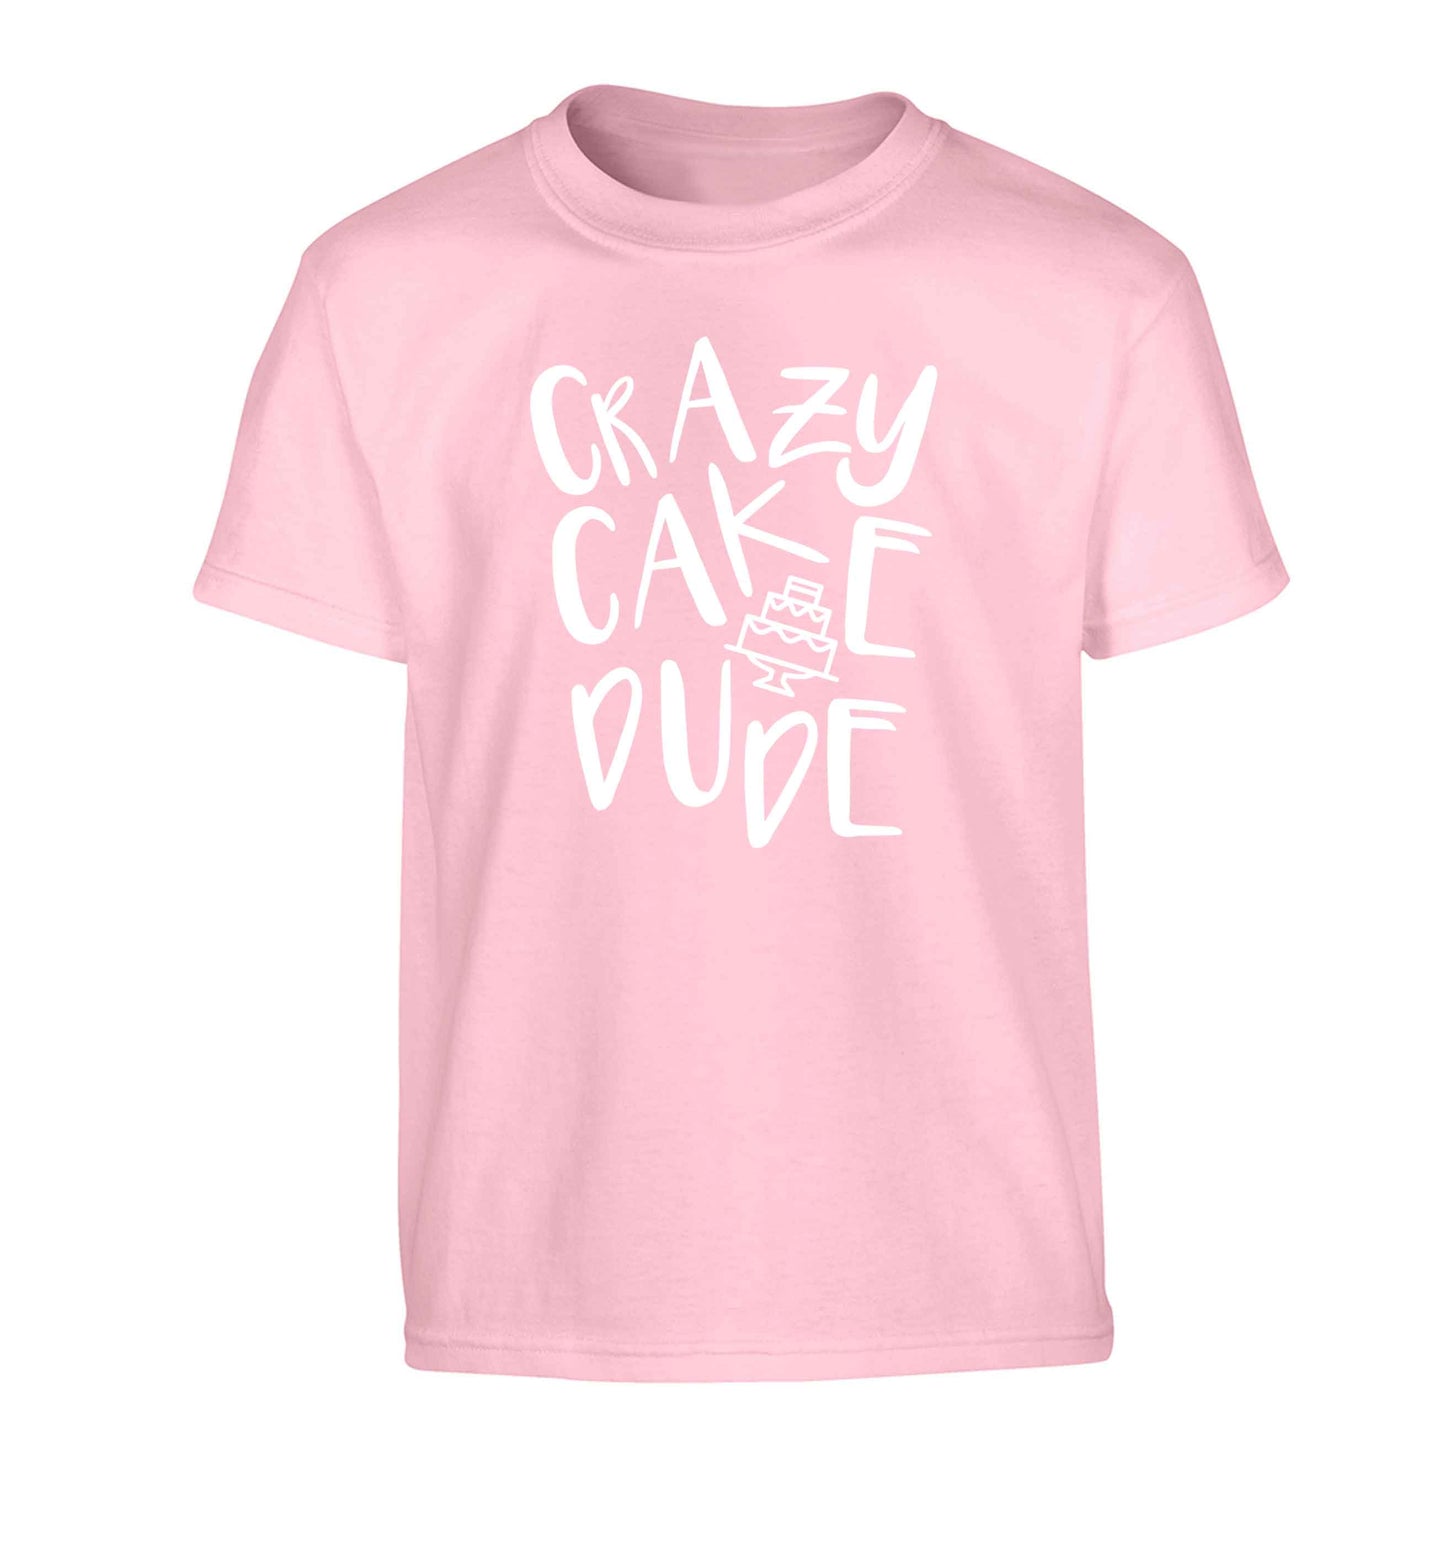 Crazy cake dude Children's light pink Tshirt 12-13 Years